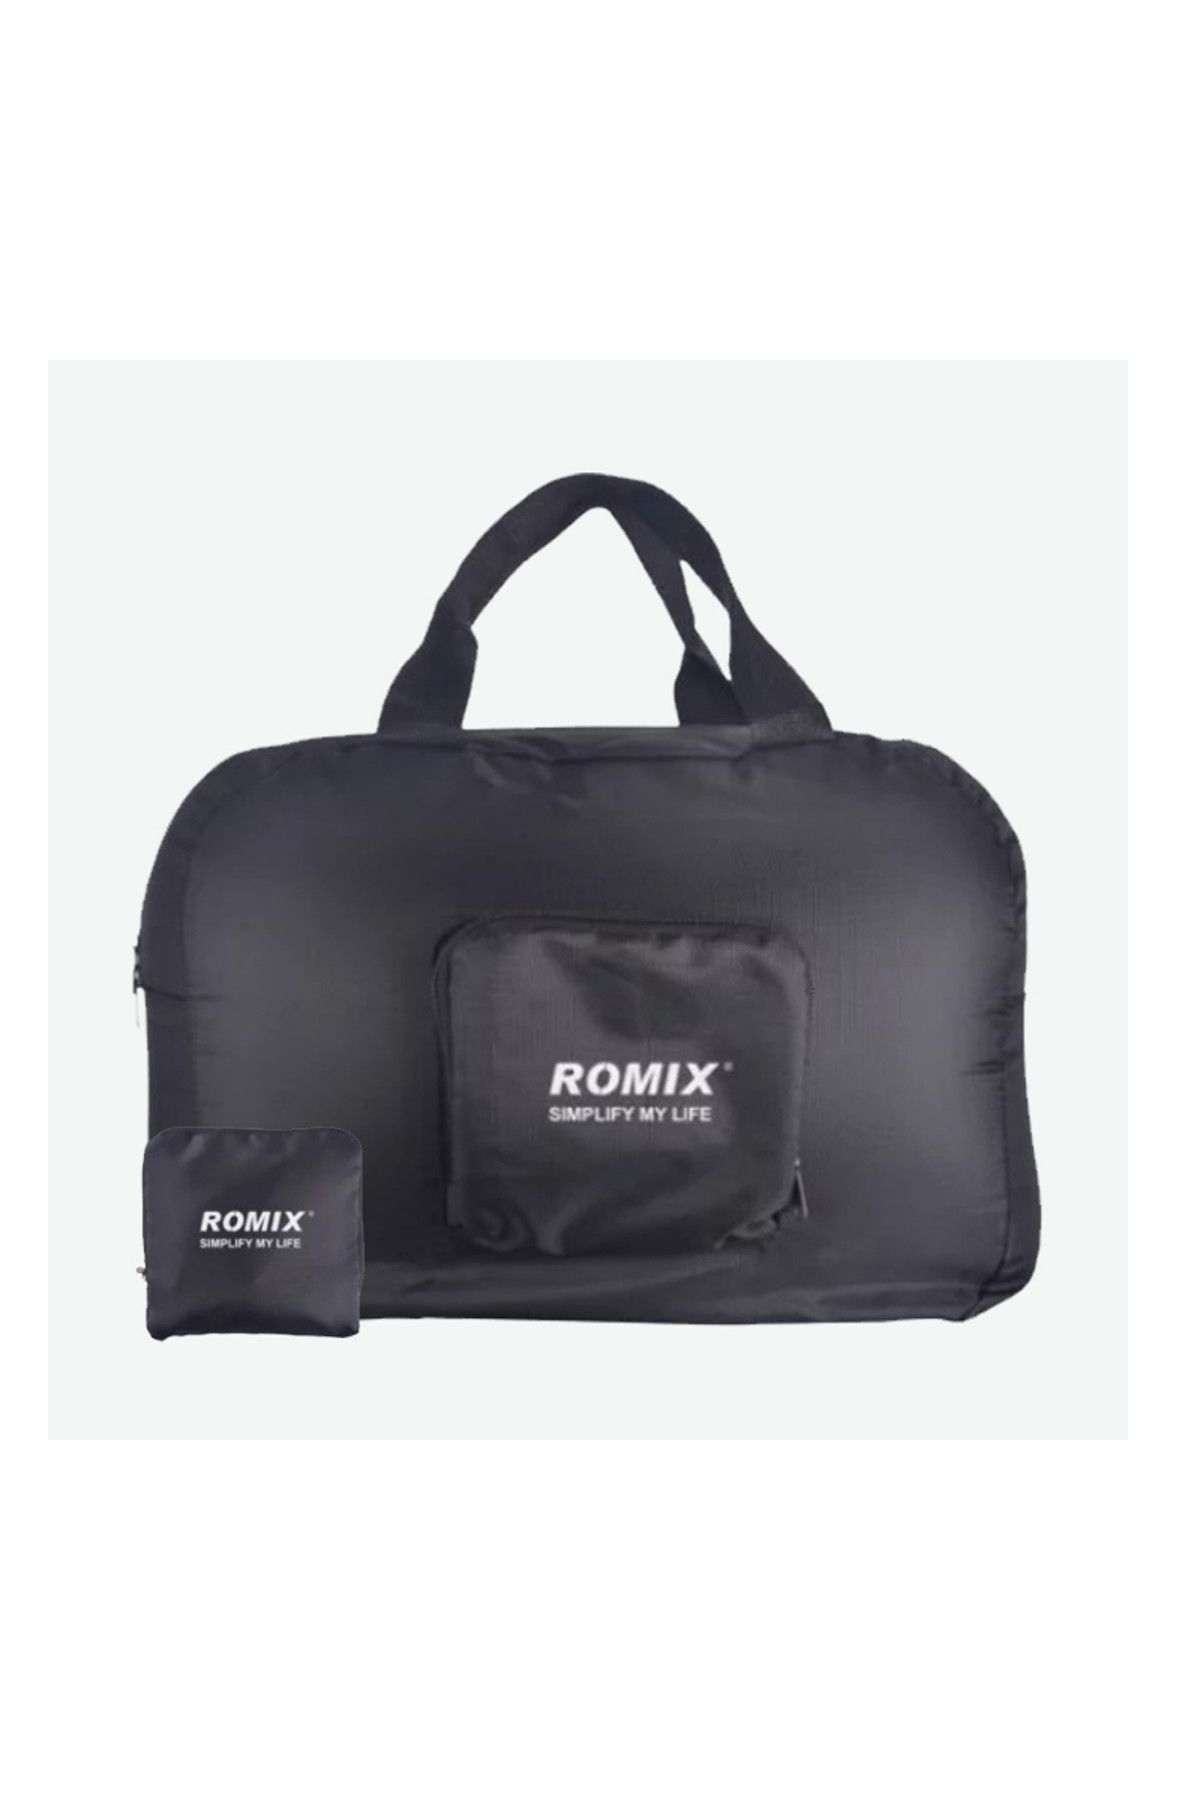 ROMİX Romix Katlanabilir ve Taşınabilir Seyahat Çantası